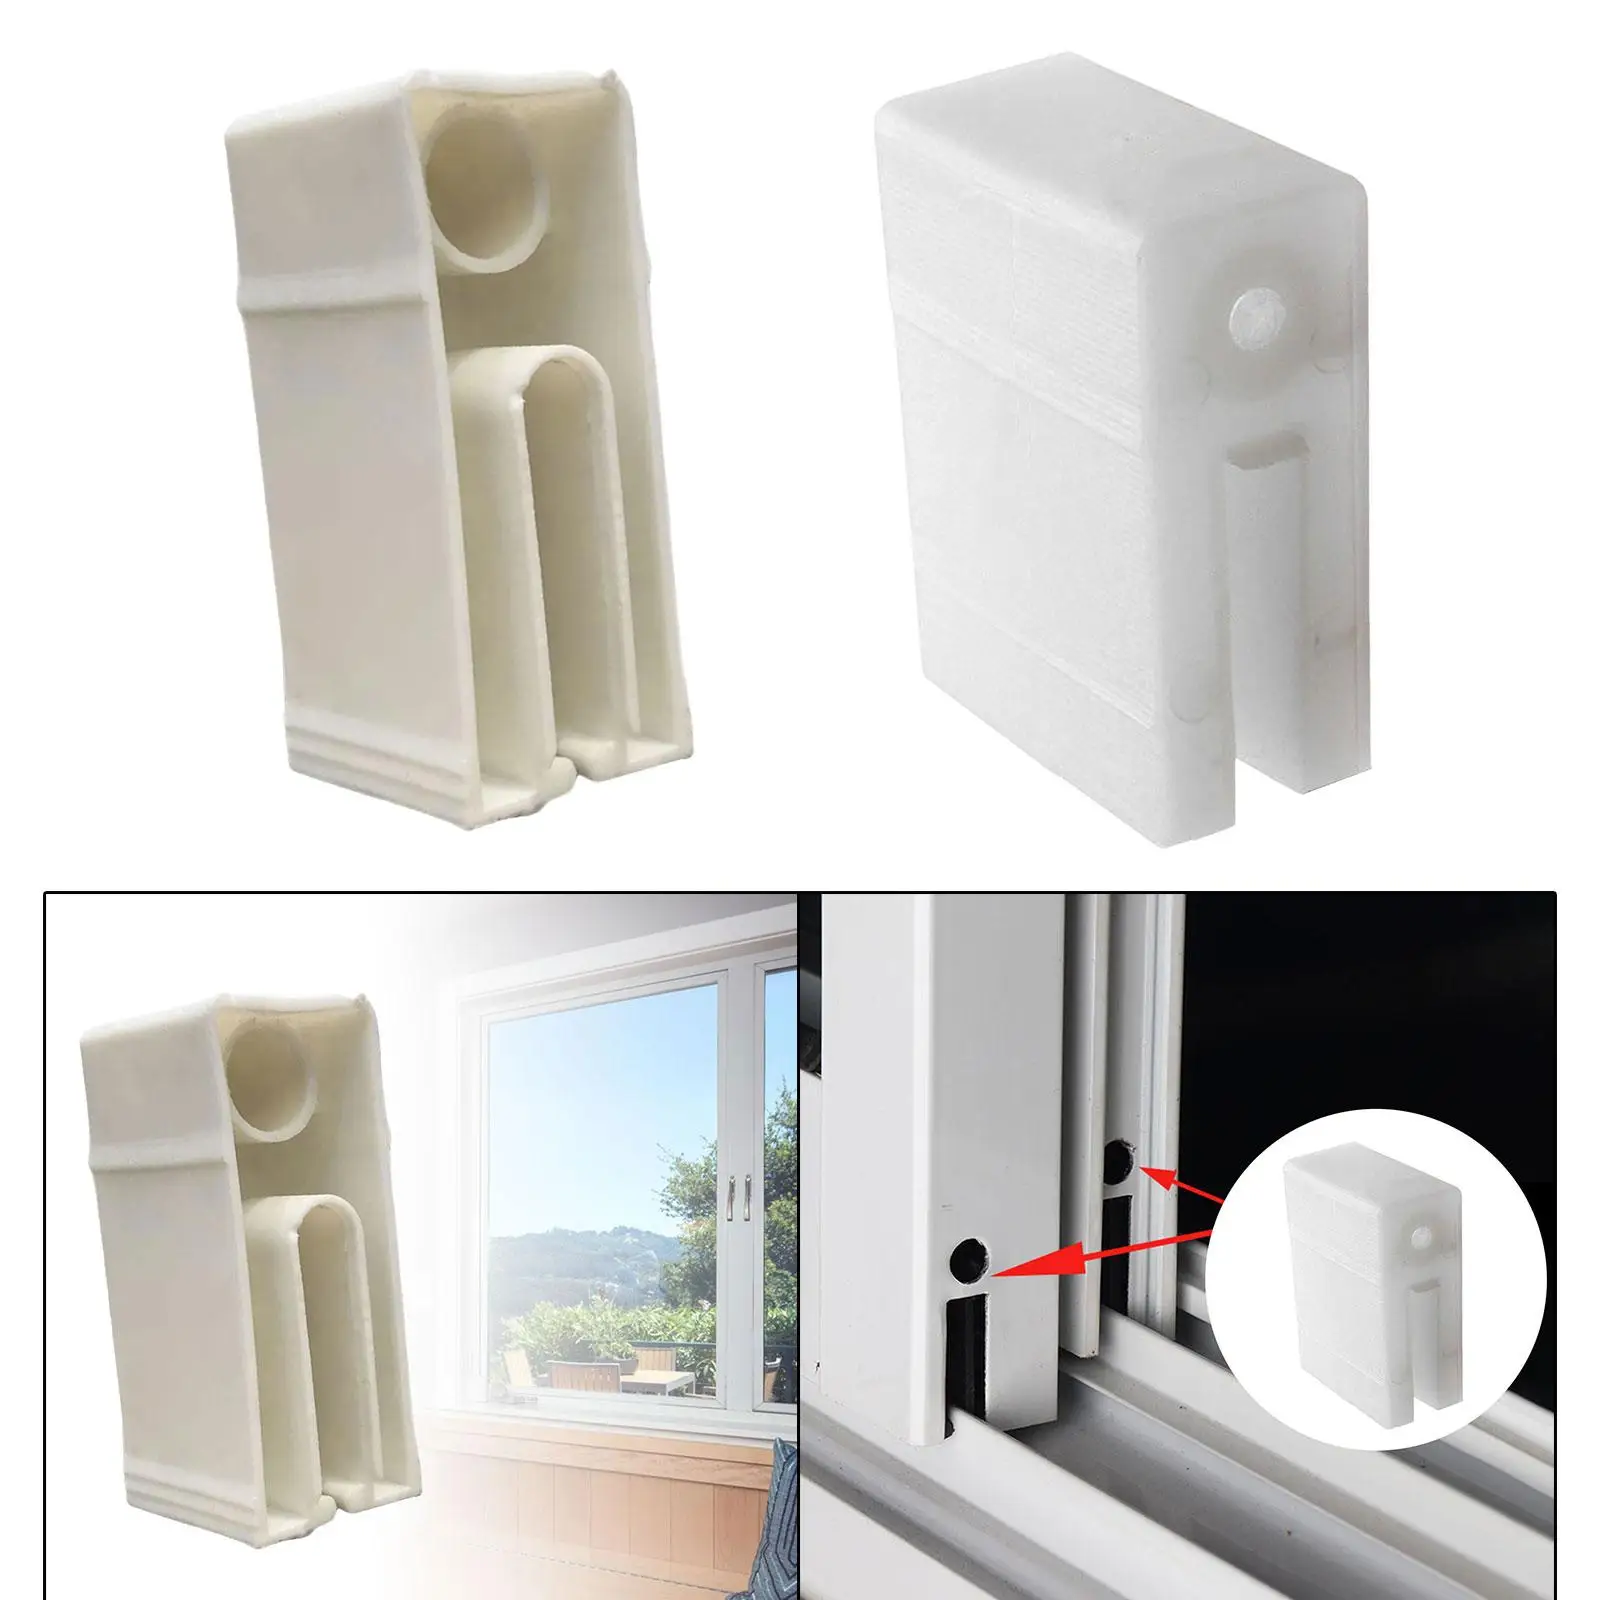 Sliding Window and Door Blocks Durable Window Accessories Door Stopper Block for Commercial Places Shops Doors Offices Household